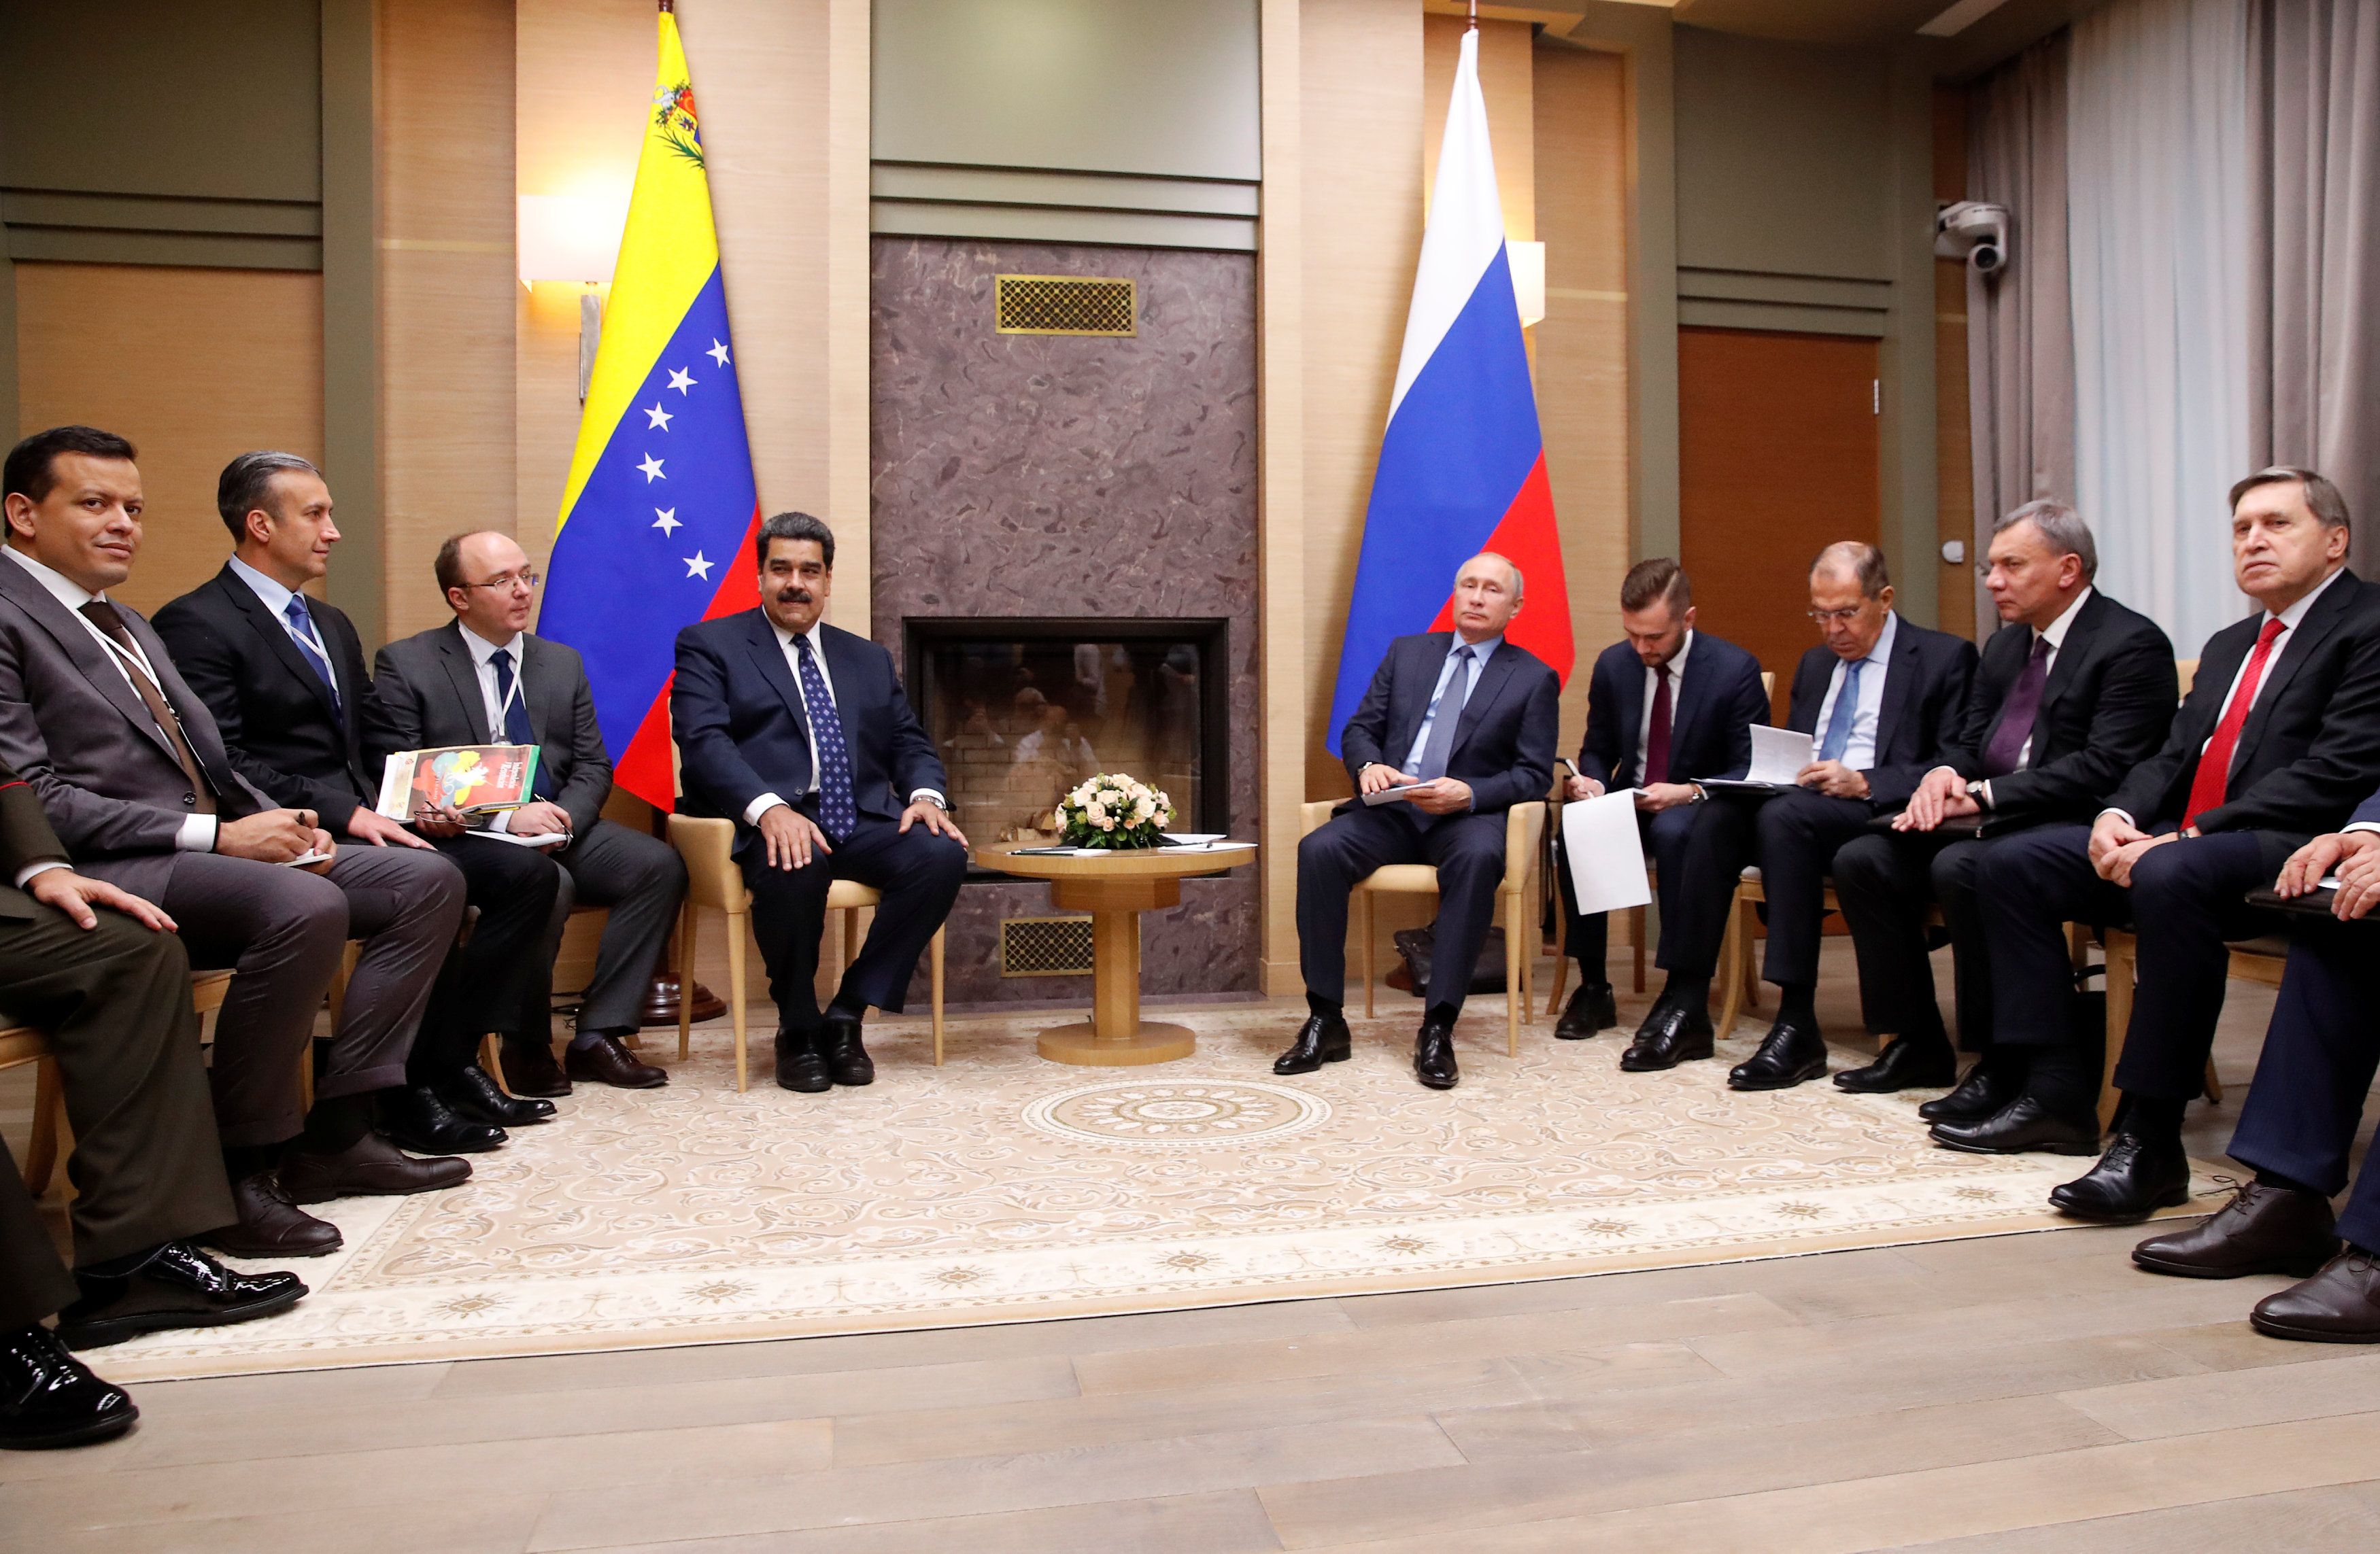 Maduro en su visita por Rusia logró materializar acuerdos de salud, alimentación, defensa, telecomunicaciones, minería, petróleo con el Gobierno ruso.